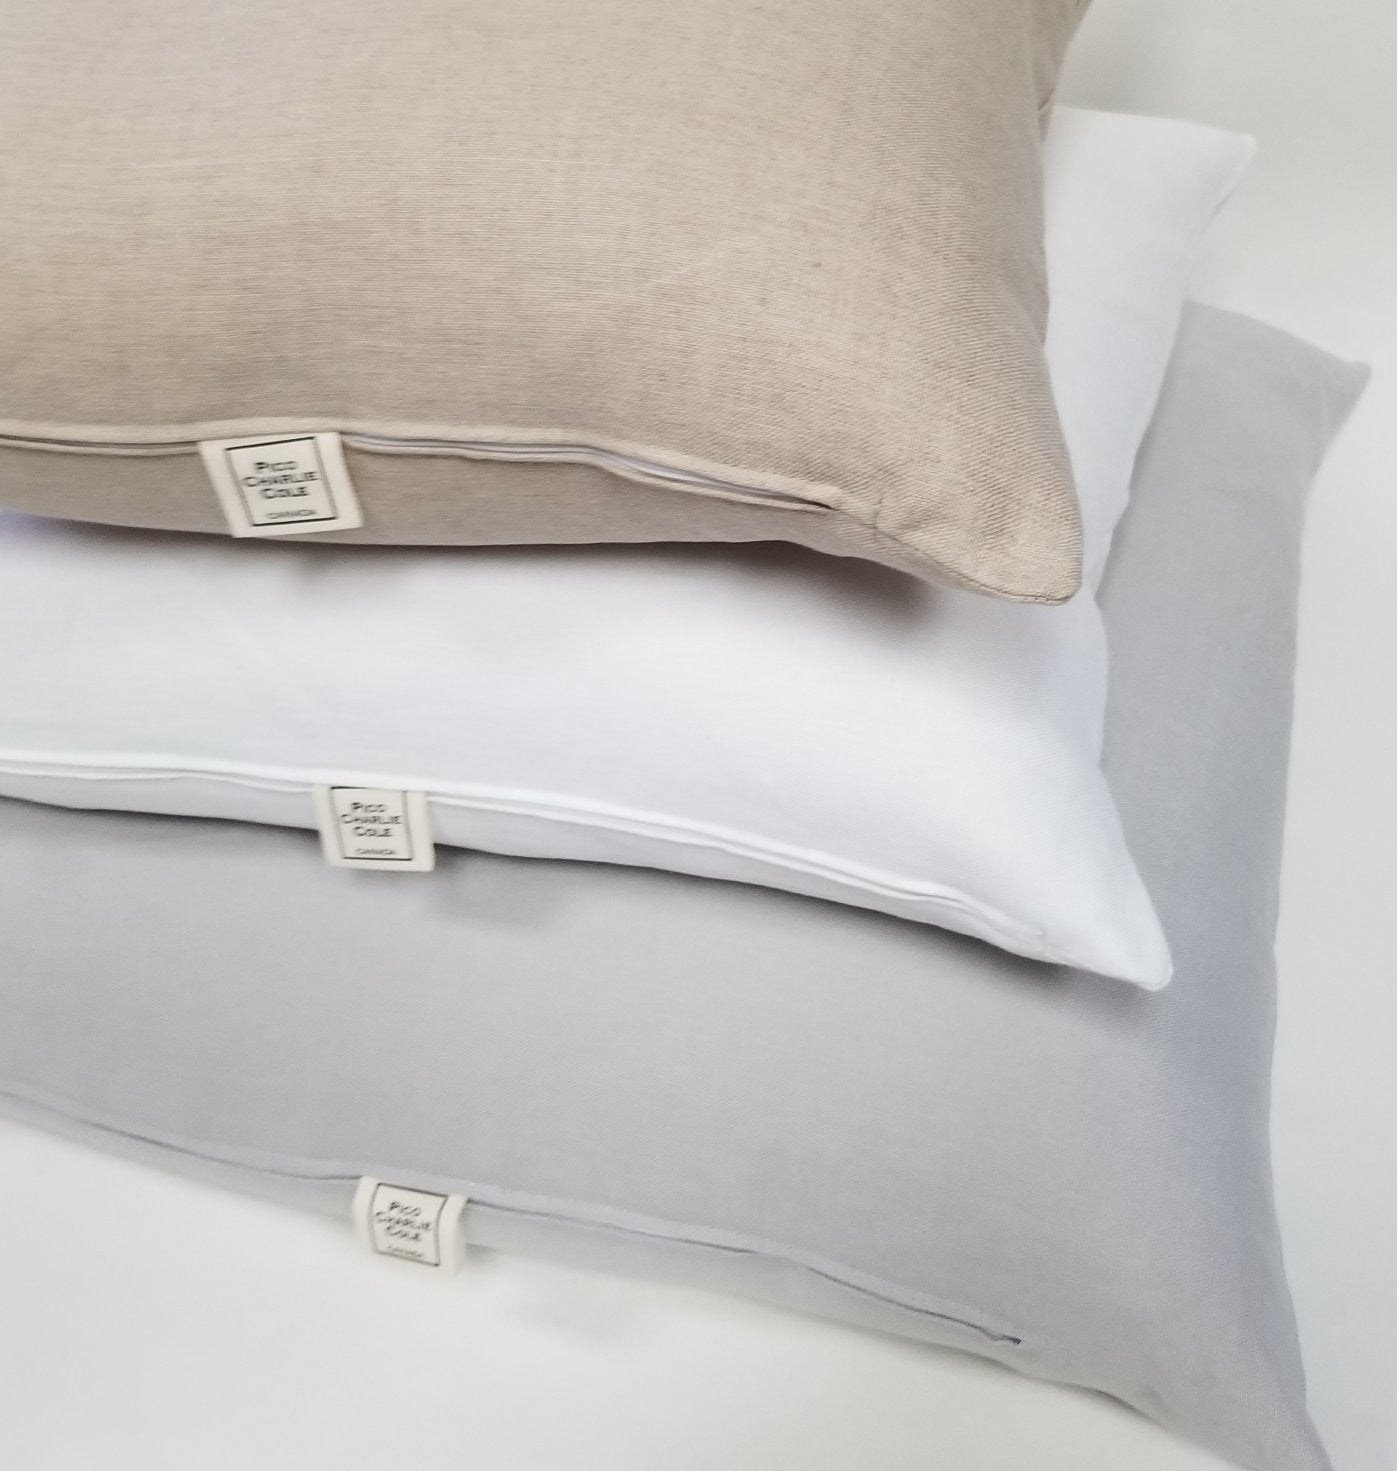 Enjoy the little things Linen Pillow 16"x24"